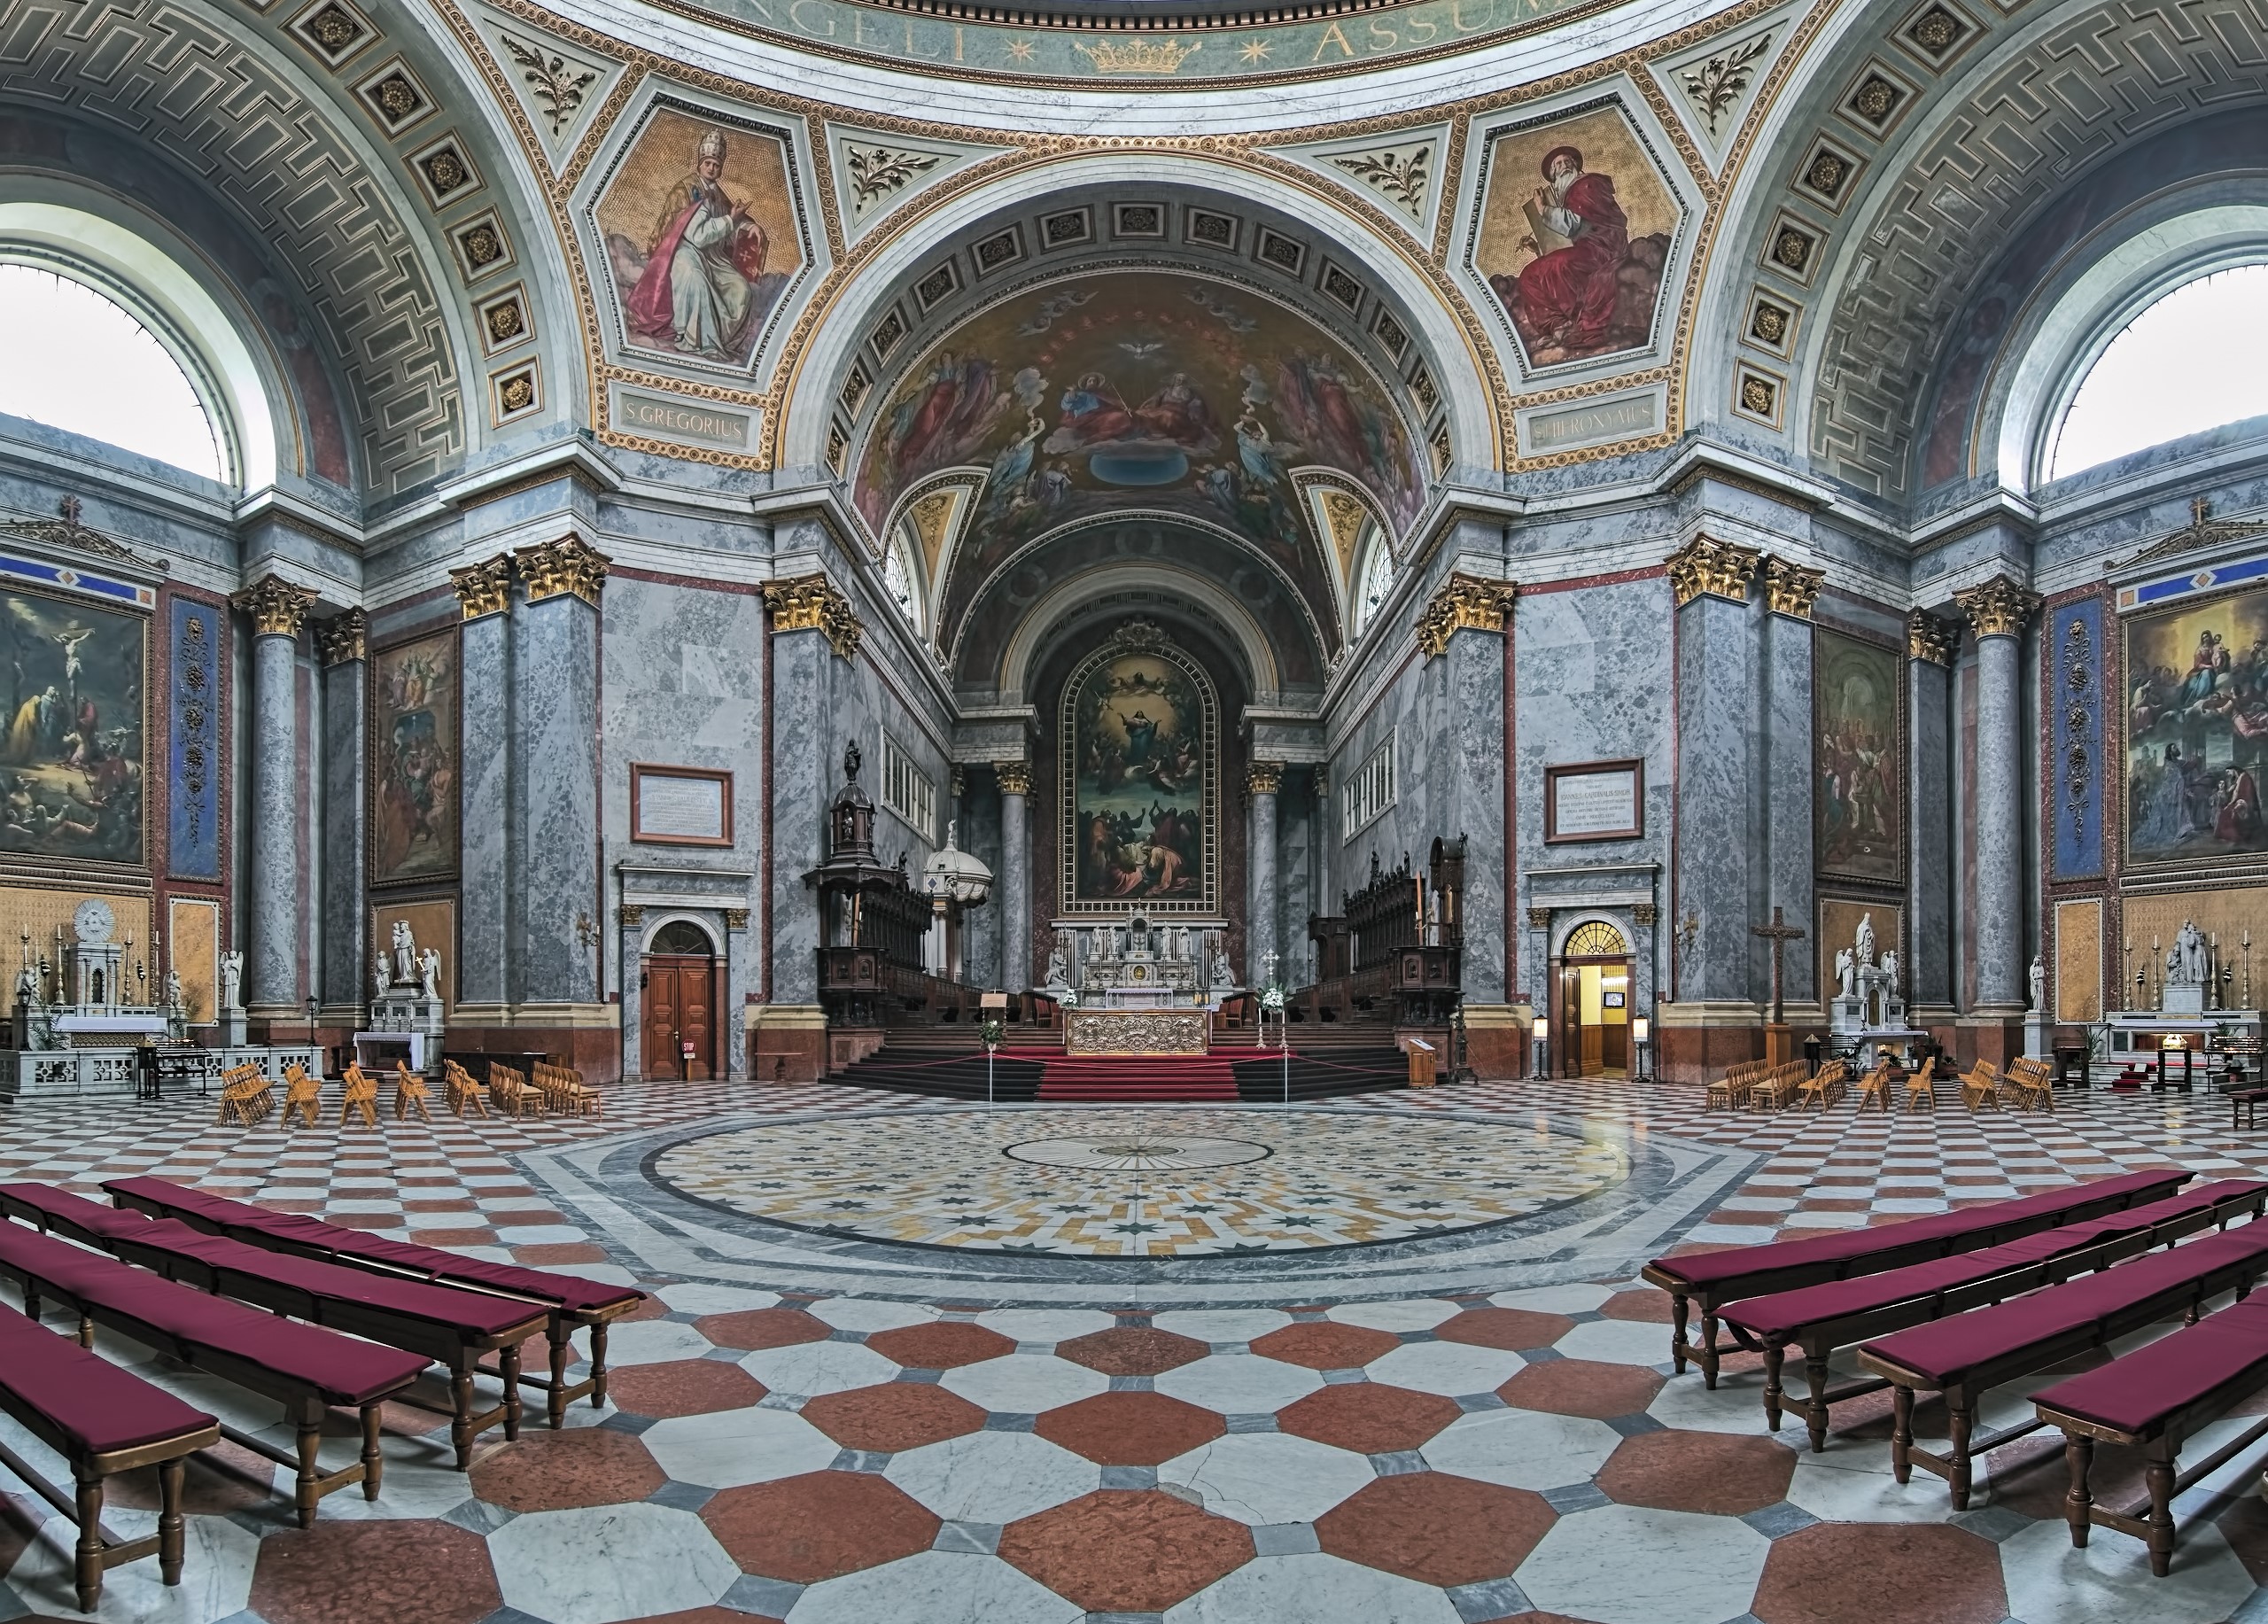 Interior of Esztergom Basilica, Hungary